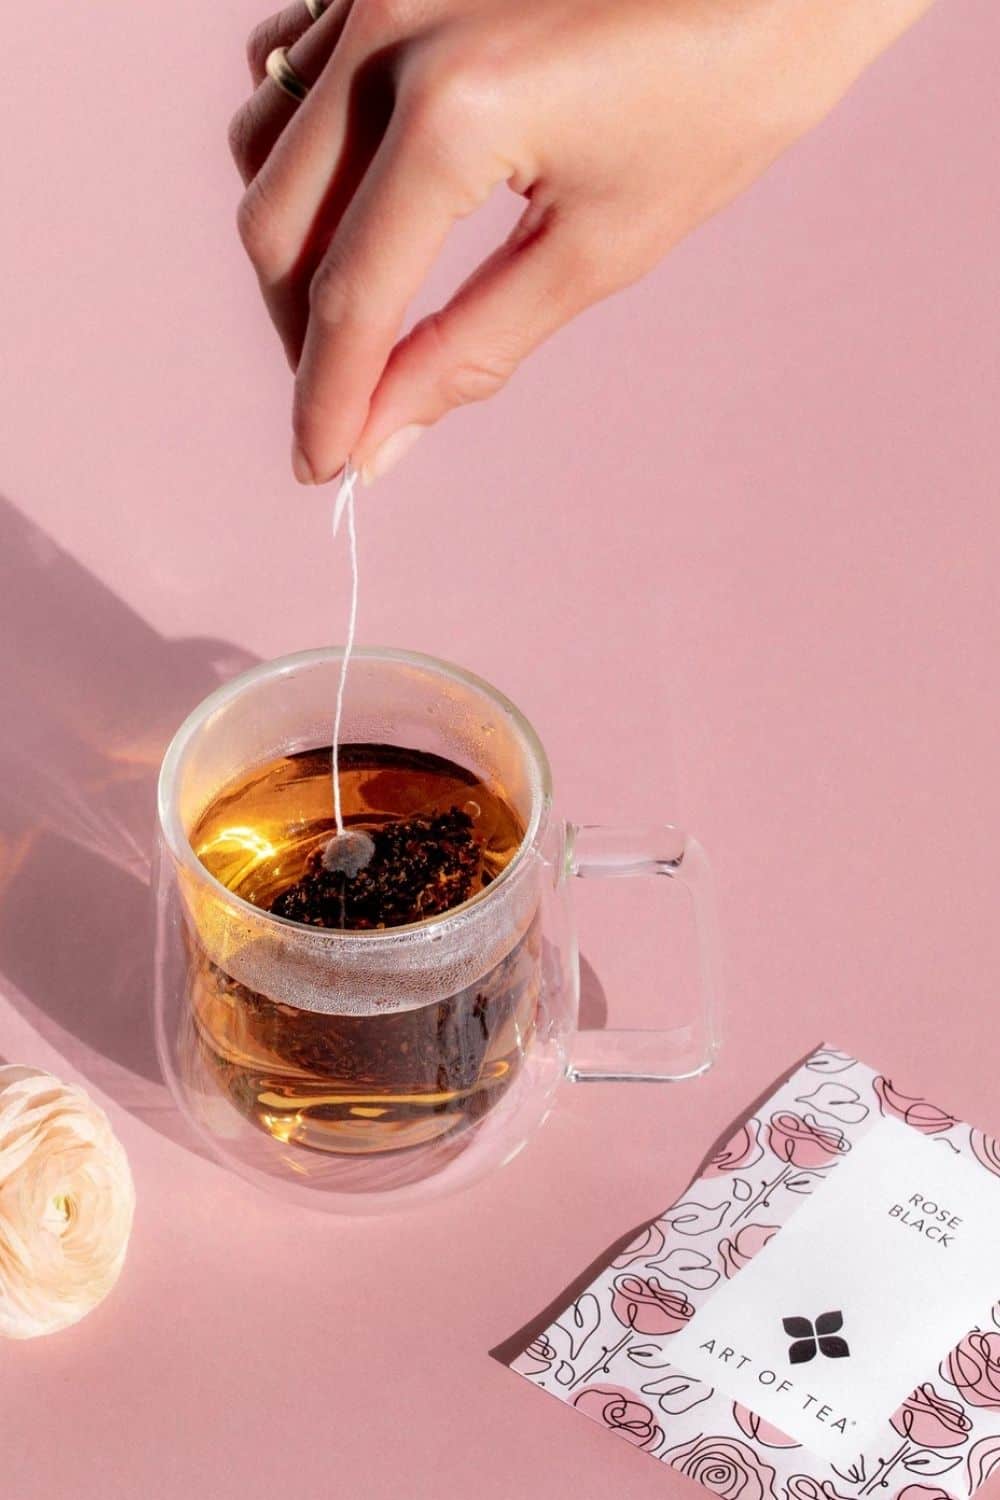 可持续发展的茶叶是什么?人们对生态友好茶品牌制作的乌龙茶赞不绝口，这些品牌正在传播积极的信息